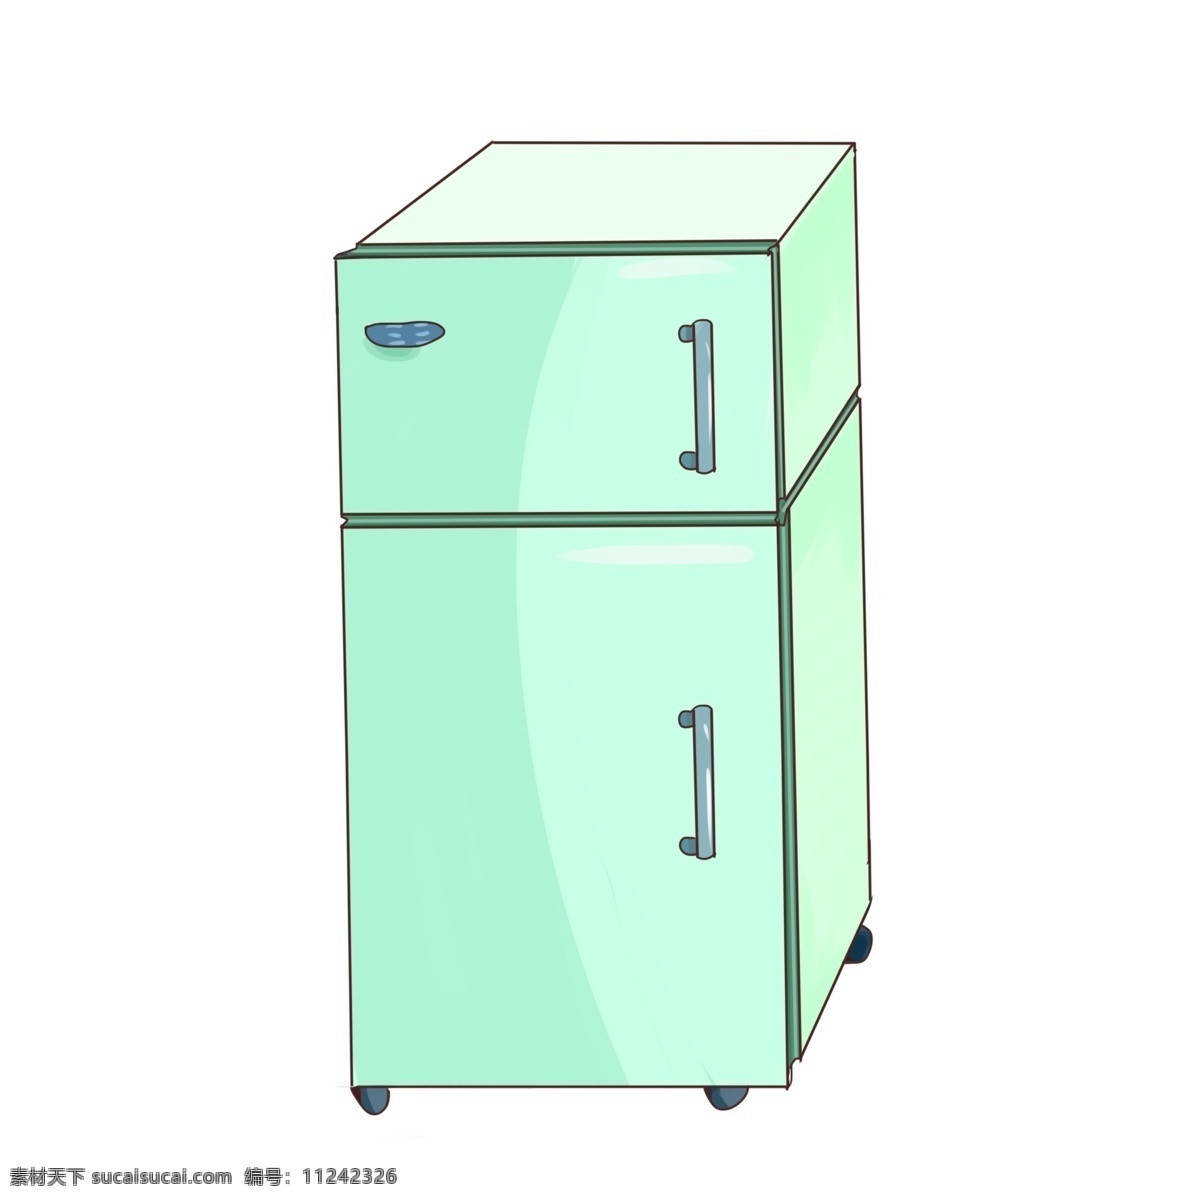 厨房家具 冰箱 插画 厨房 家庭 家具 电器 绿色家电冰箱 双门冰箱插画 冷藏 冷冻 冰箱插画